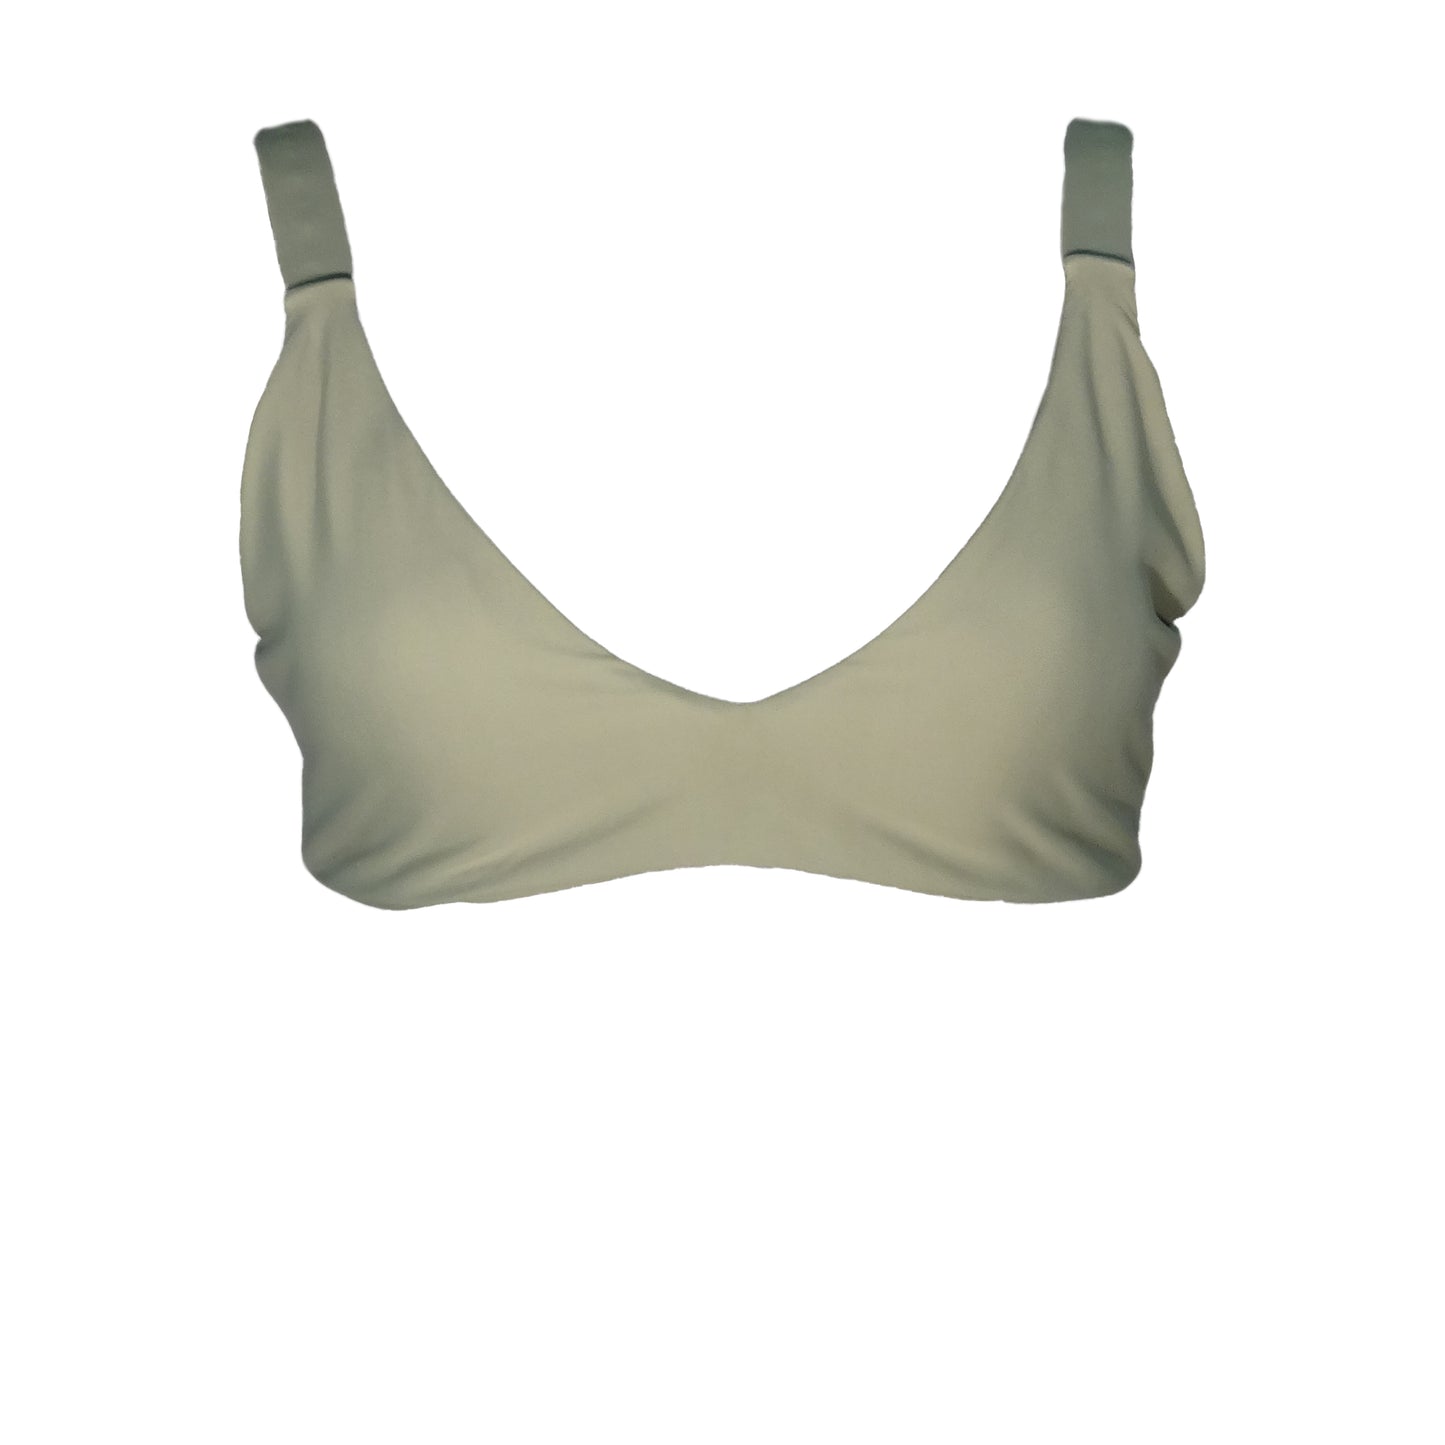 Sage bralette bikini top with plunging v-neck, wide shoulder straps, and gold belt buckle back closure. 